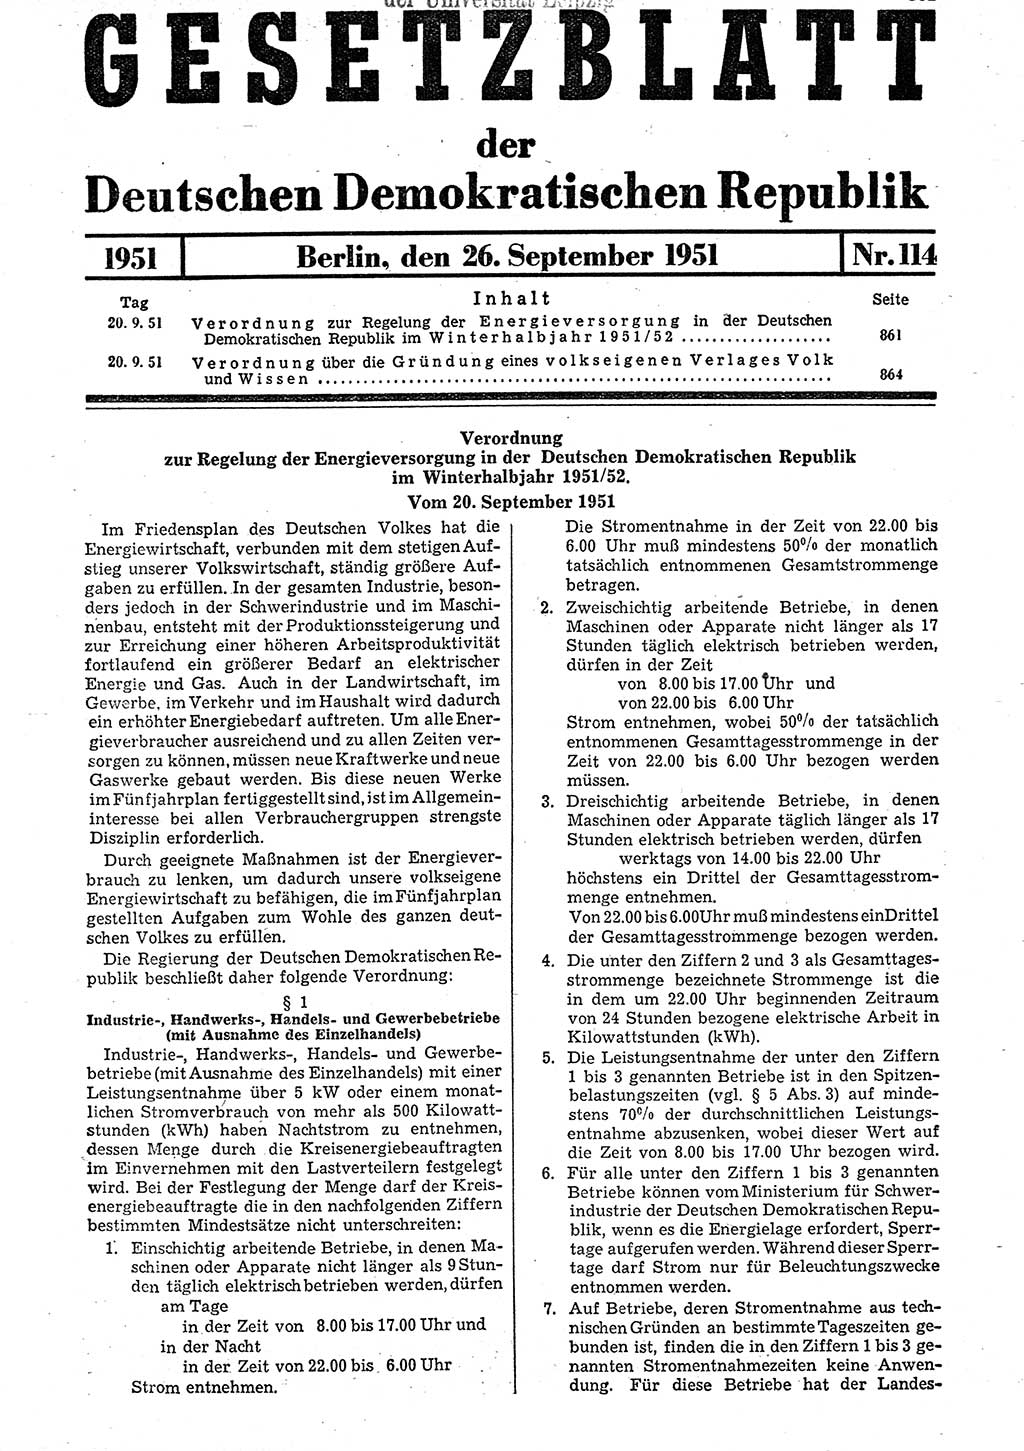 Gesetzblatt (GBl.) der Deutschen Demokratischen Republik (DDR) 1951, Seite 861 (GBl. DDR 1951, S. 861)